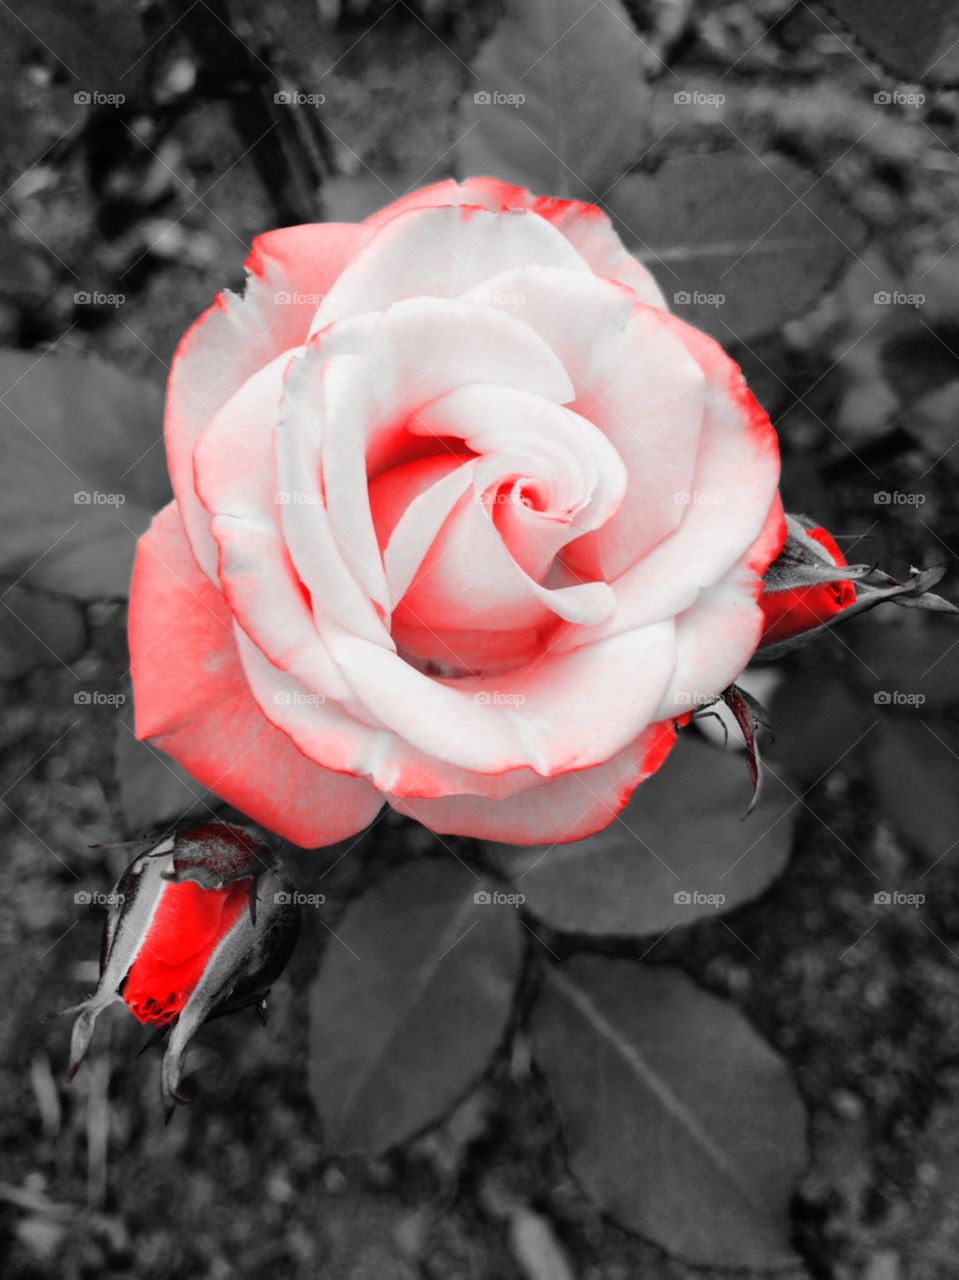 Nossa Rosa “Produzida” - 
🌼#Flores do nosso #jardim, para alegrar e embelezar nosso dia!
#Jardinagem é nosso #hobby.
🌹
#flowers
#garden
#nature
#flor